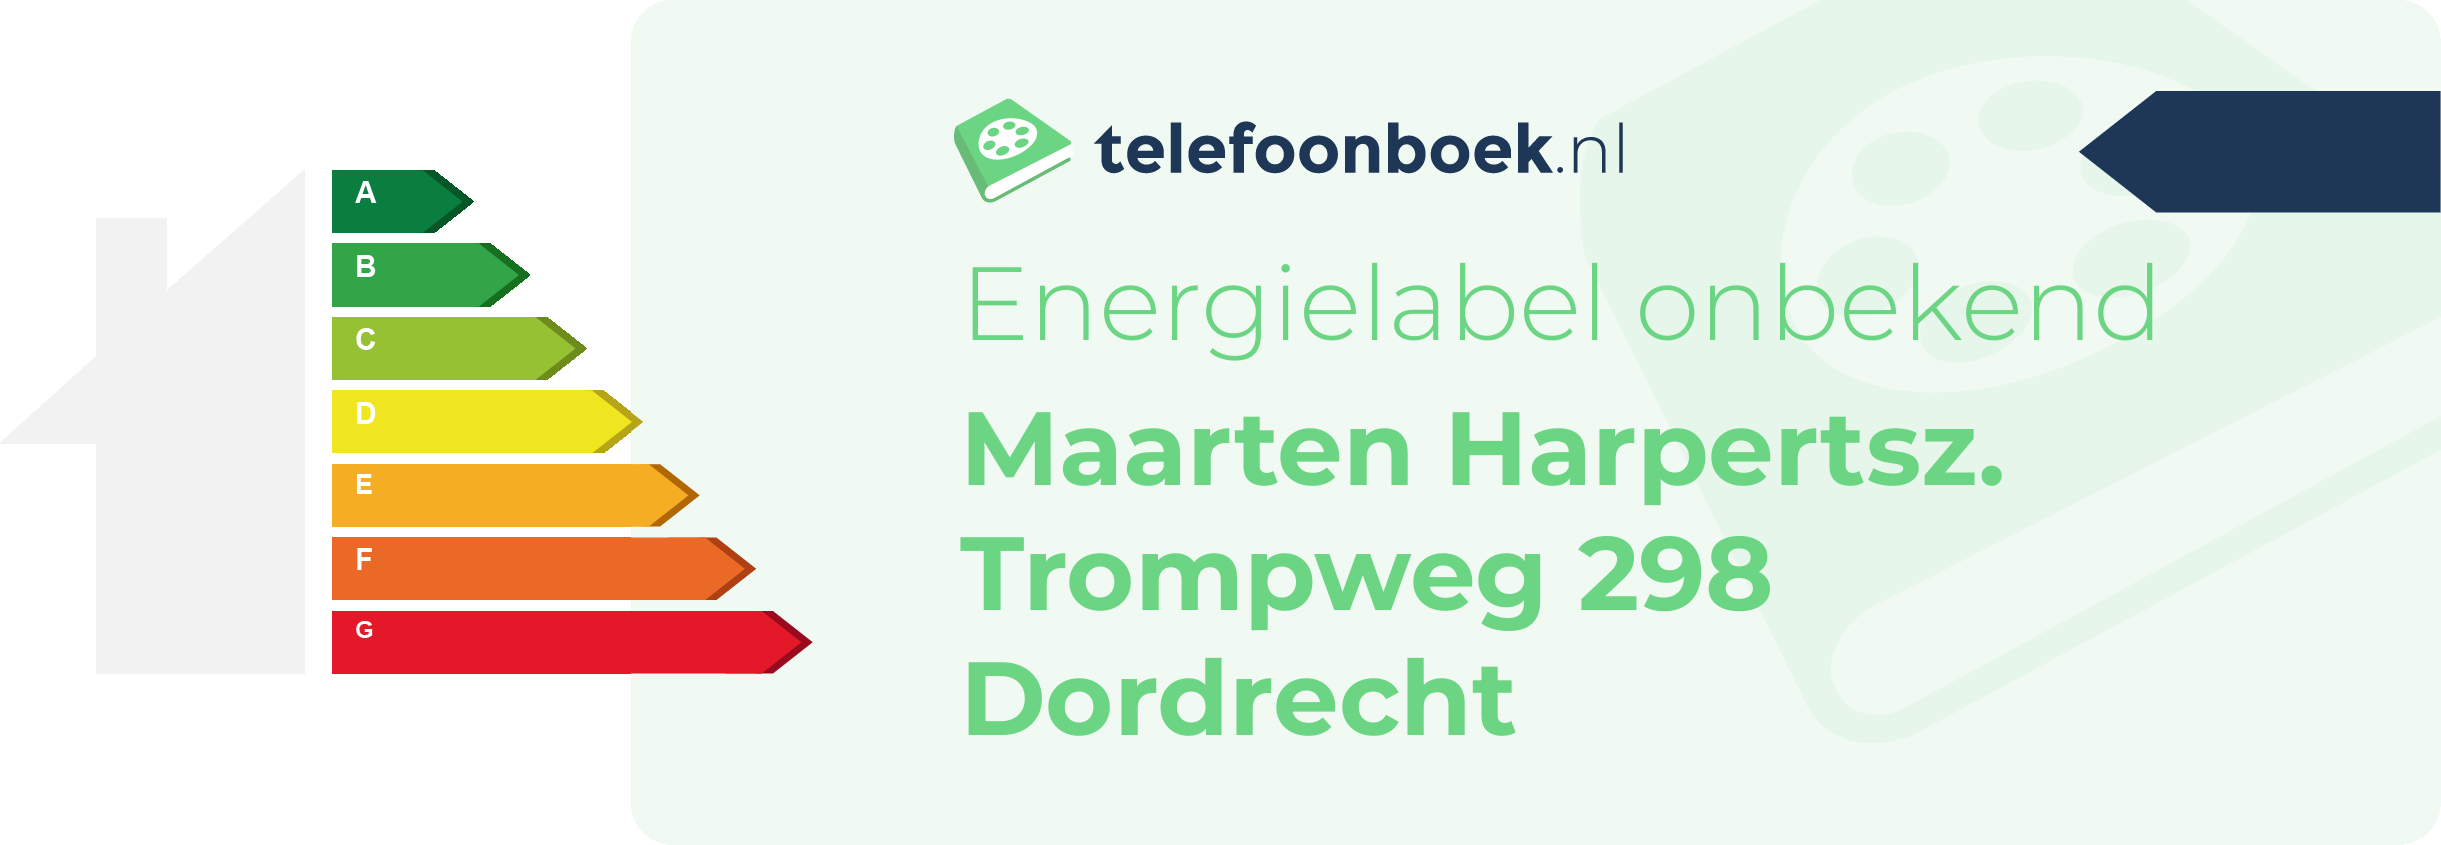 Energielabel Maarten Harpertsz. Trompweg 298 Dordrecht